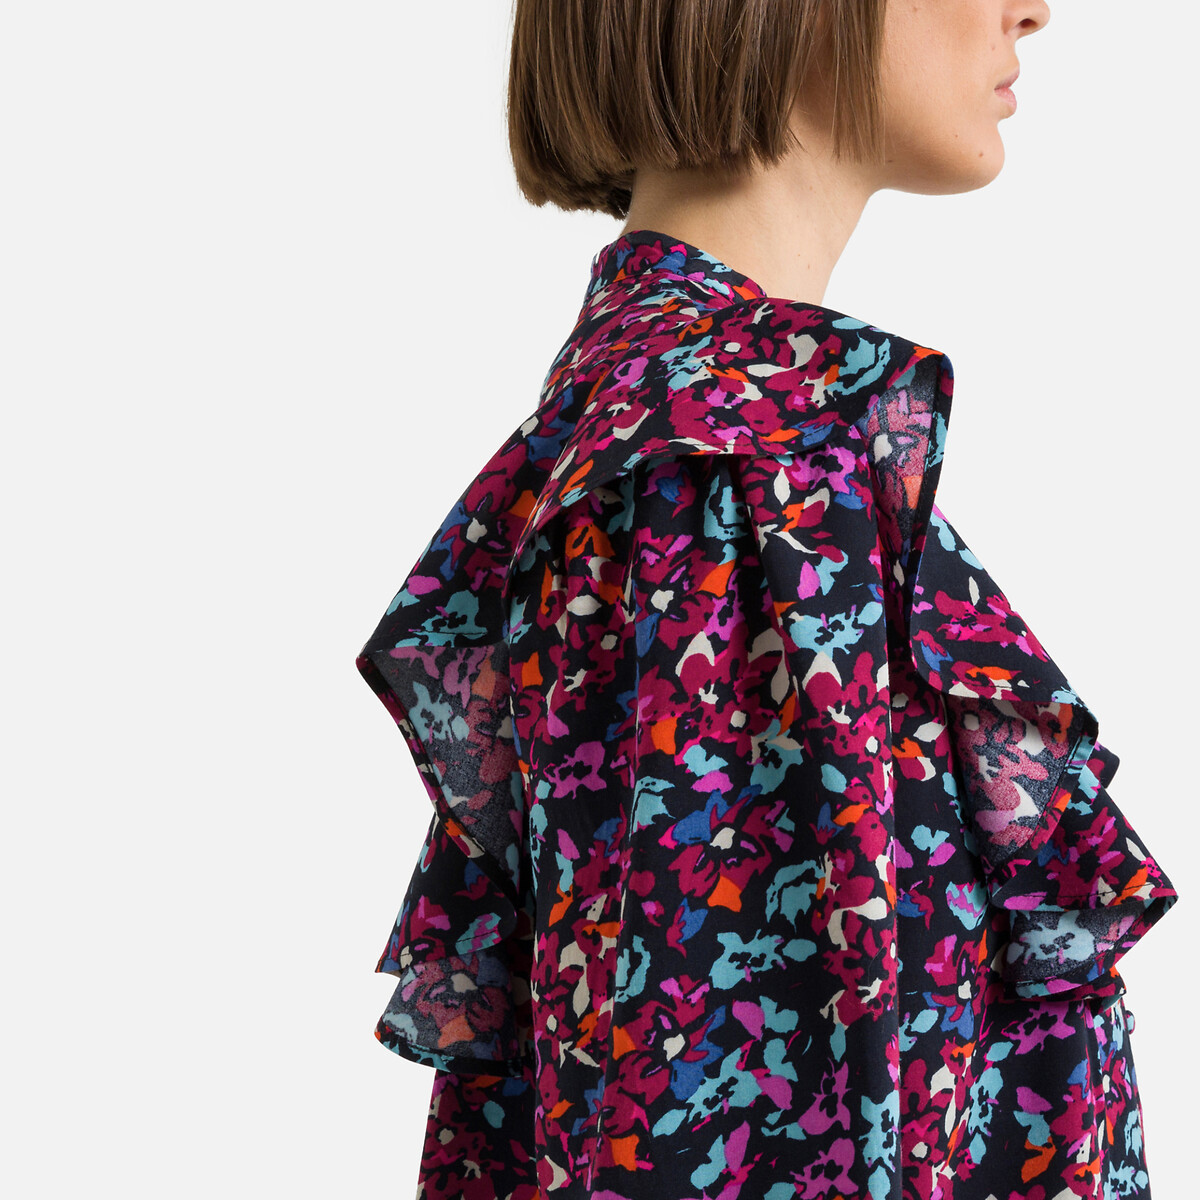 Платье С воротником-стойкой длинные рукава цветочный принт M разноцветный LaRedoute, размер M - фото 3